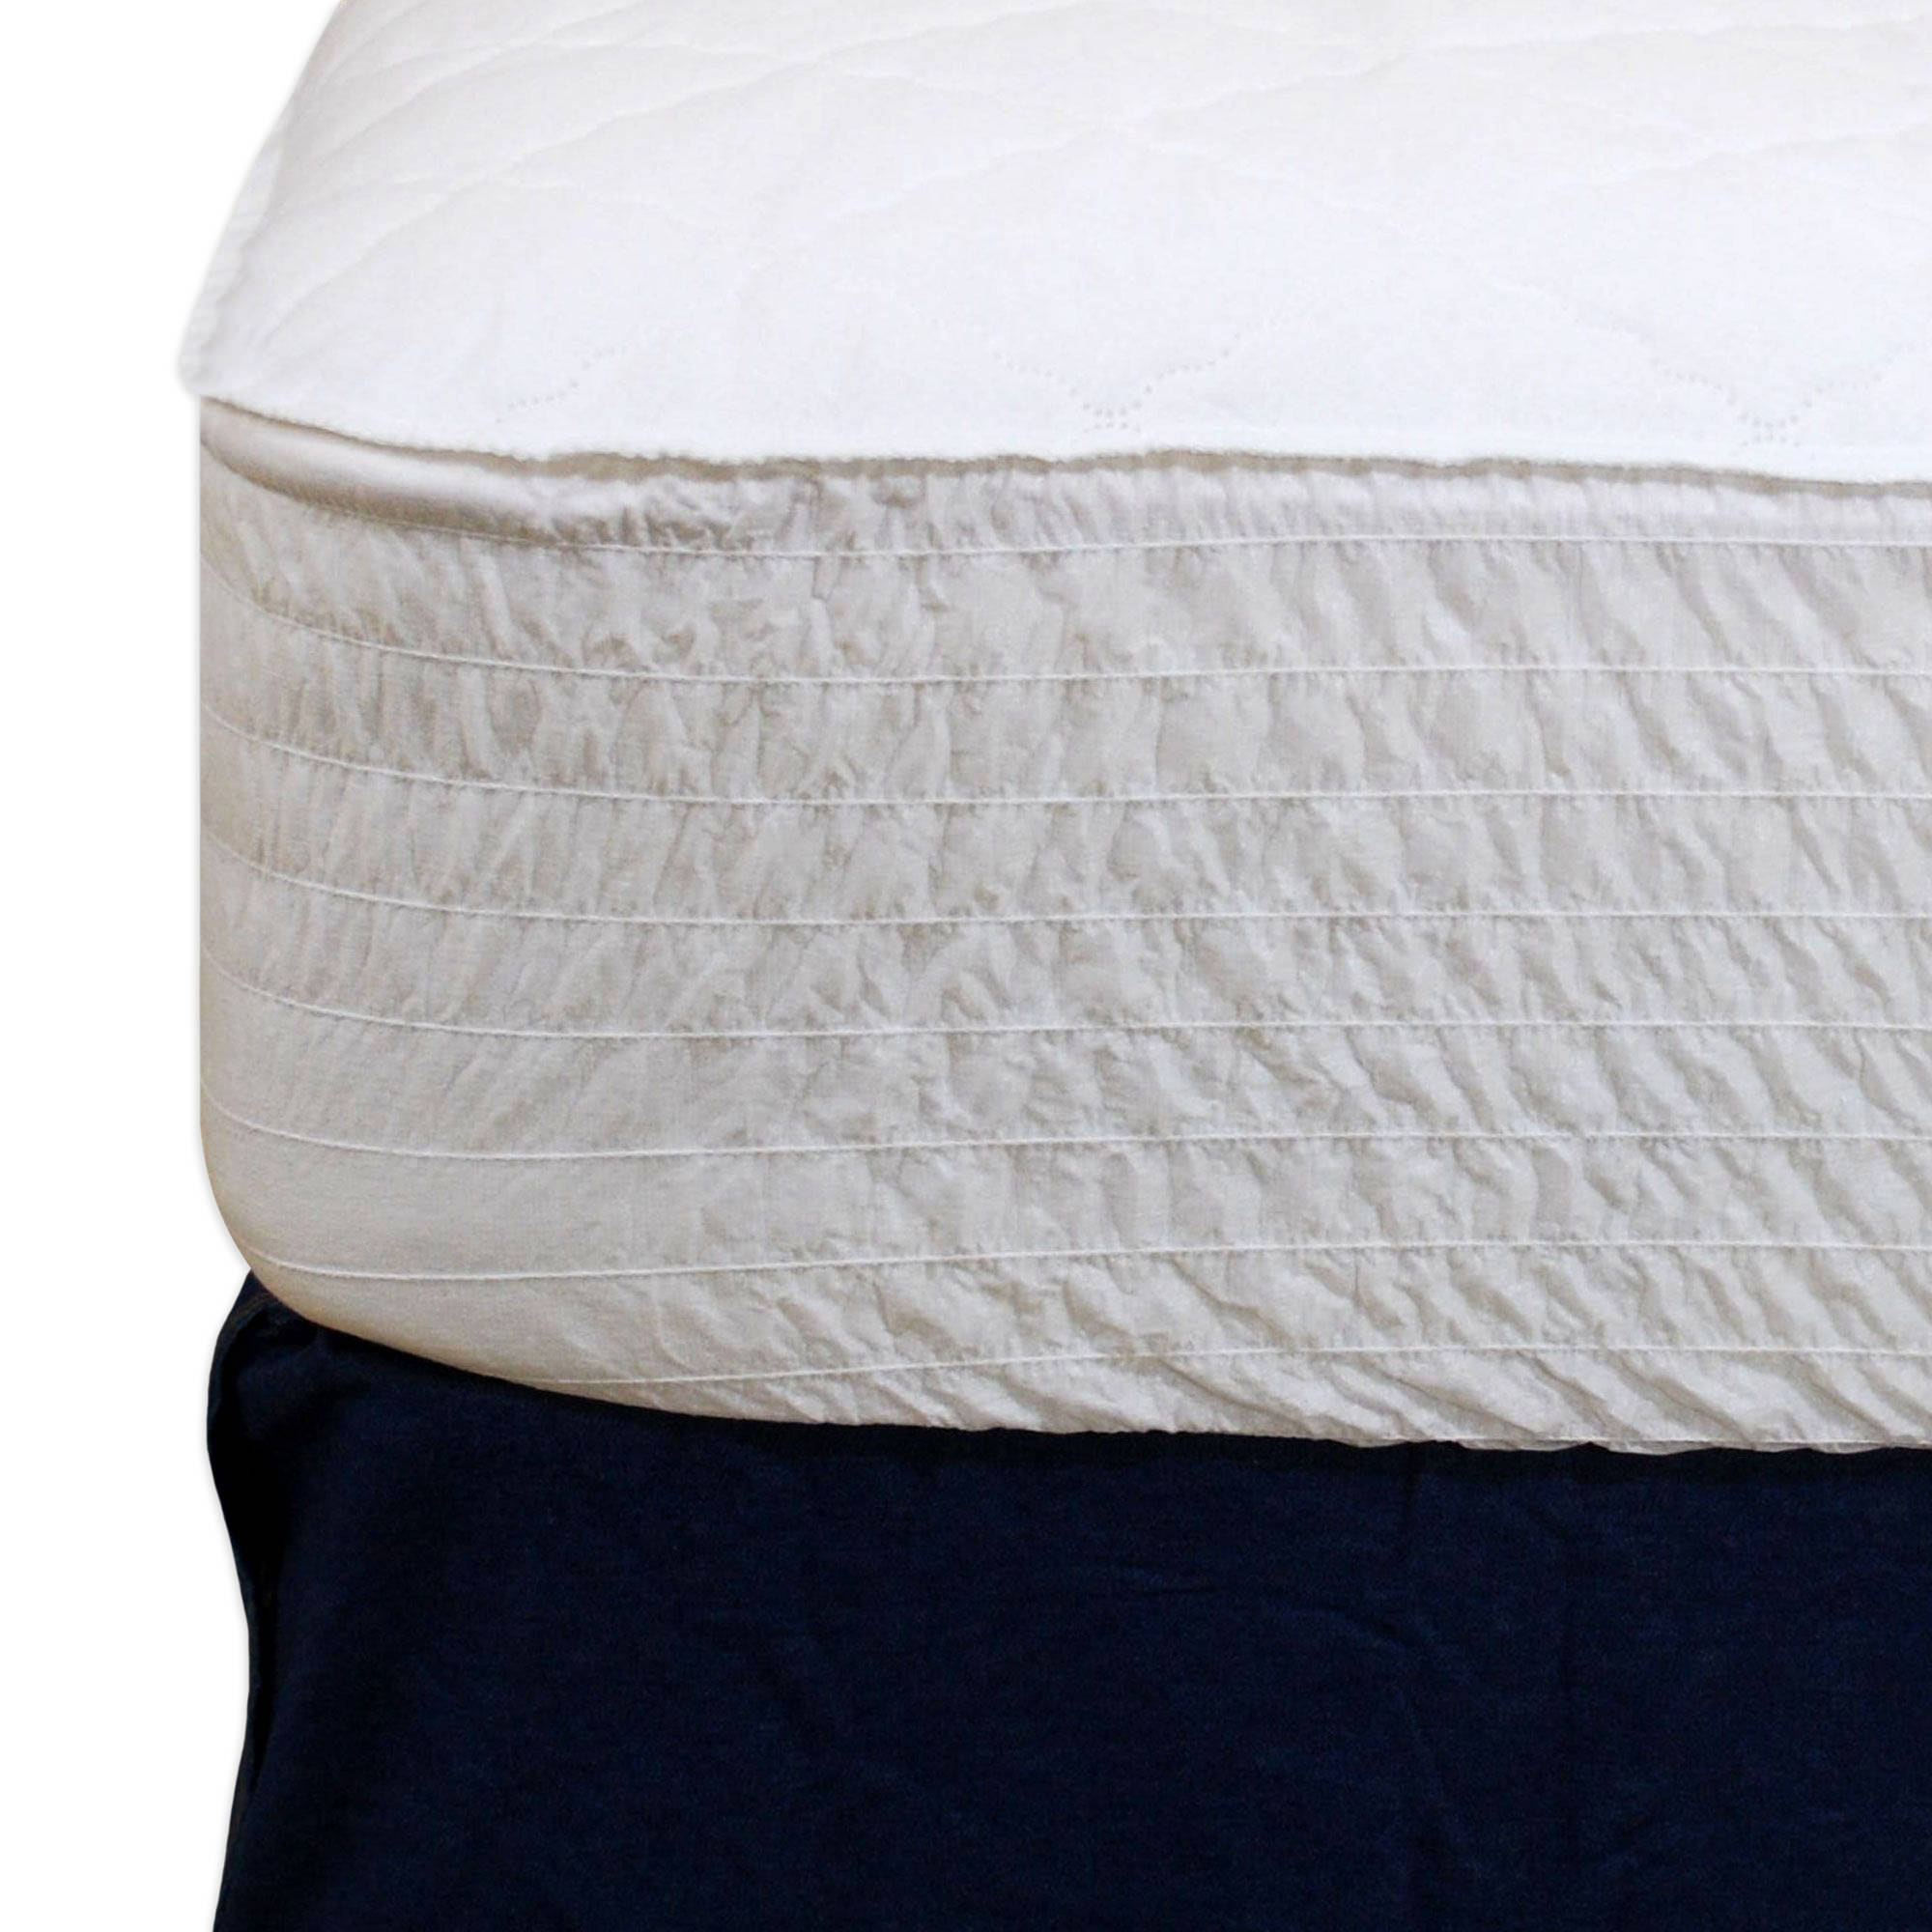 waterproof mattress pad amazon